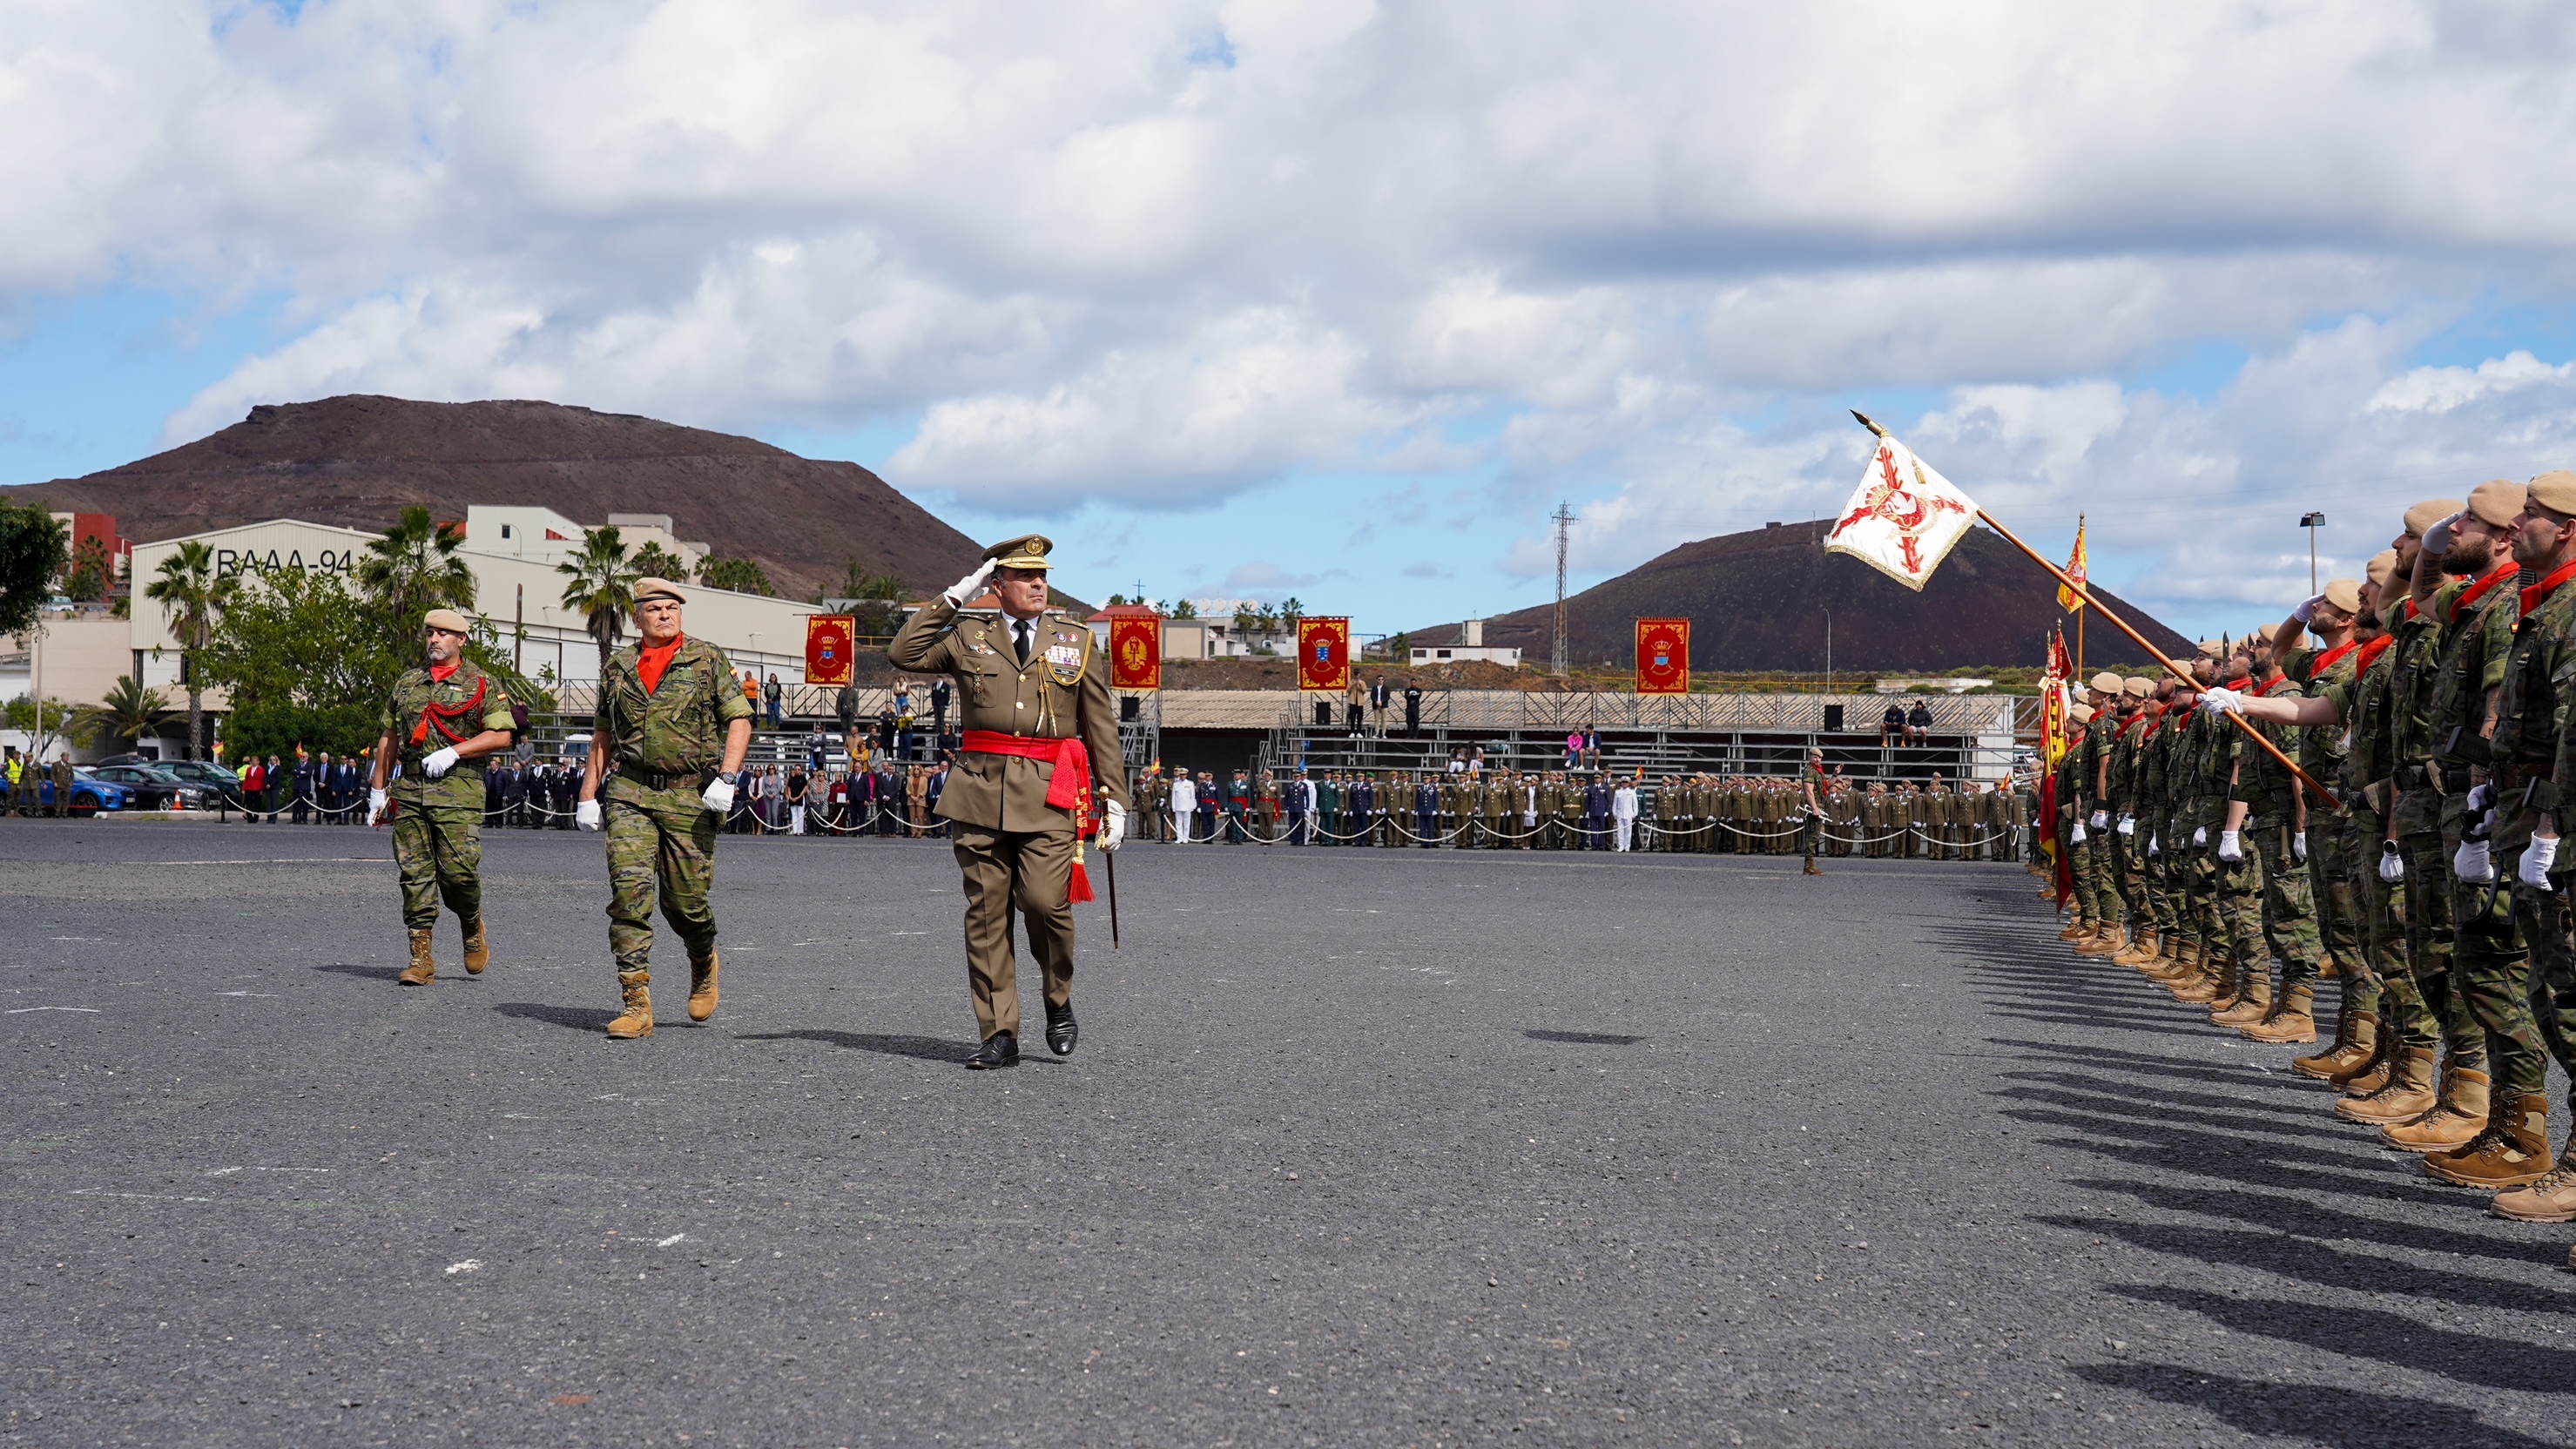 XV Aniversario de la Brigada "Canarias" XVI